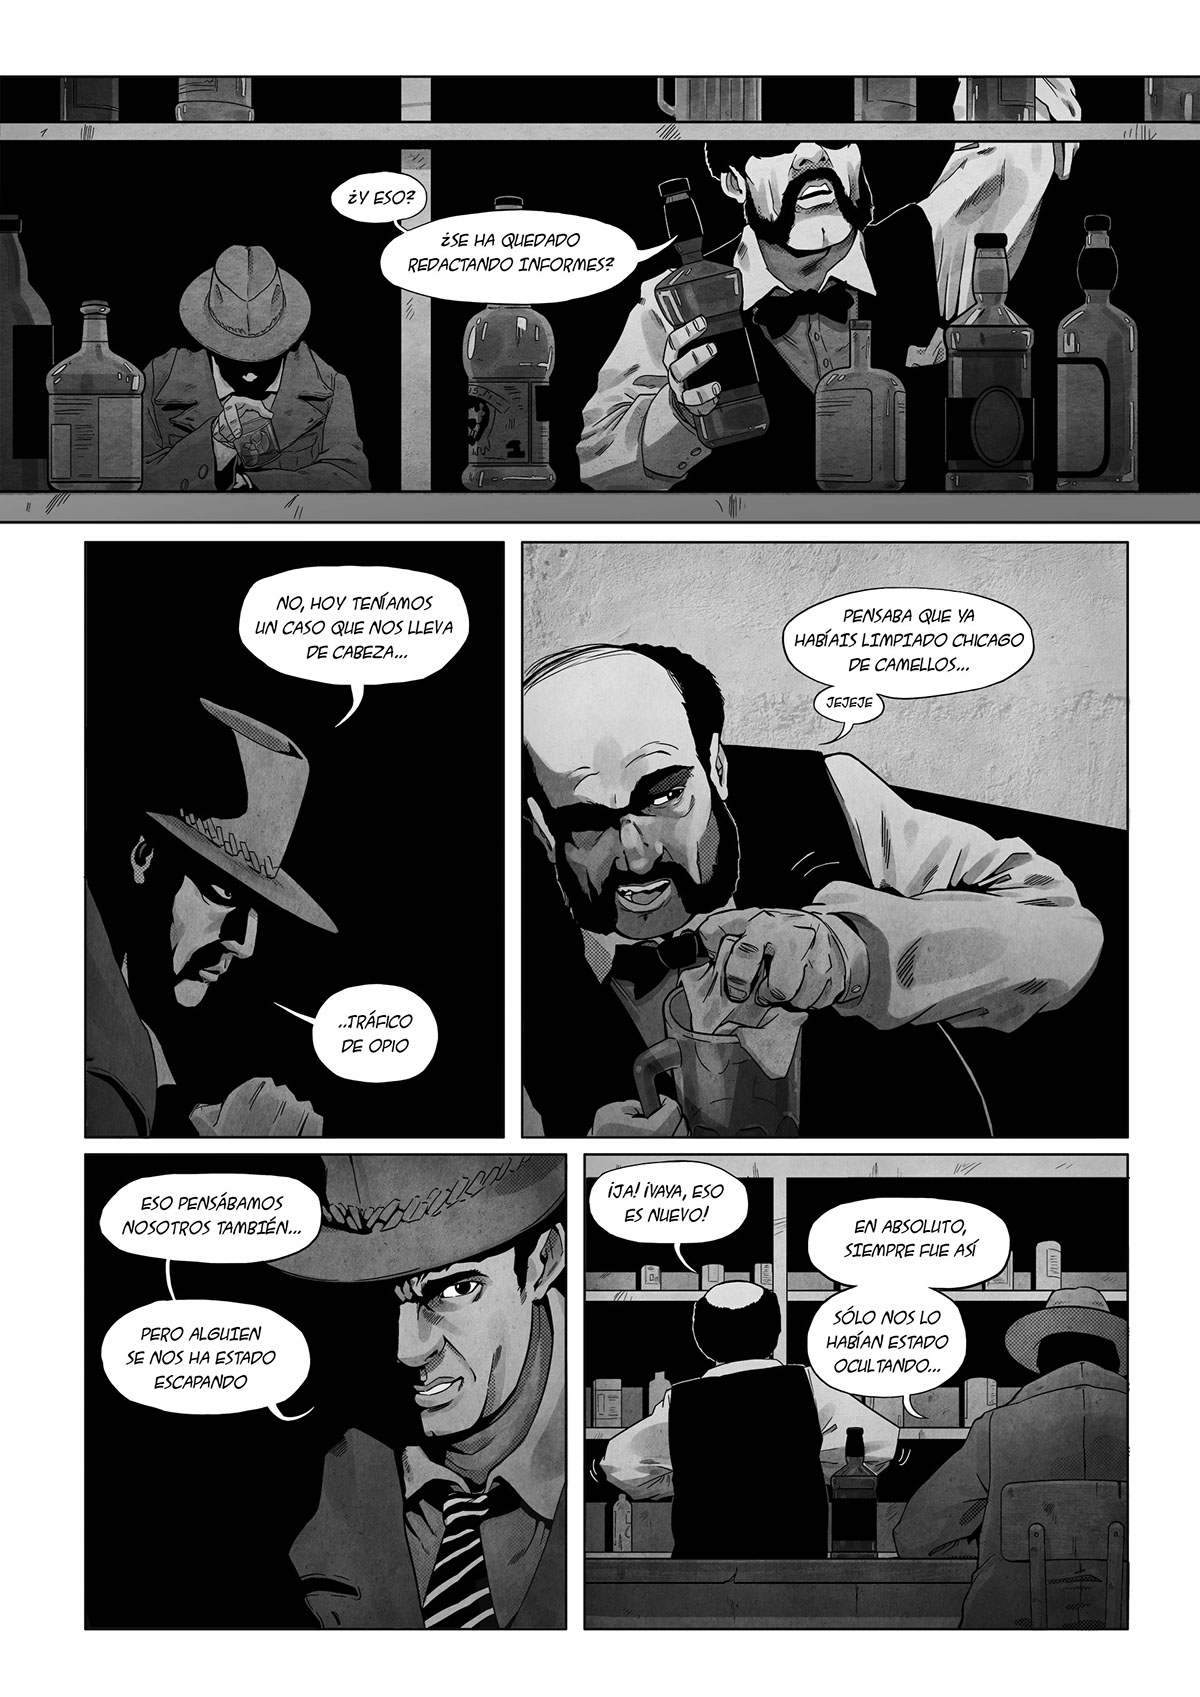 comic noir ilustration Character design  composition